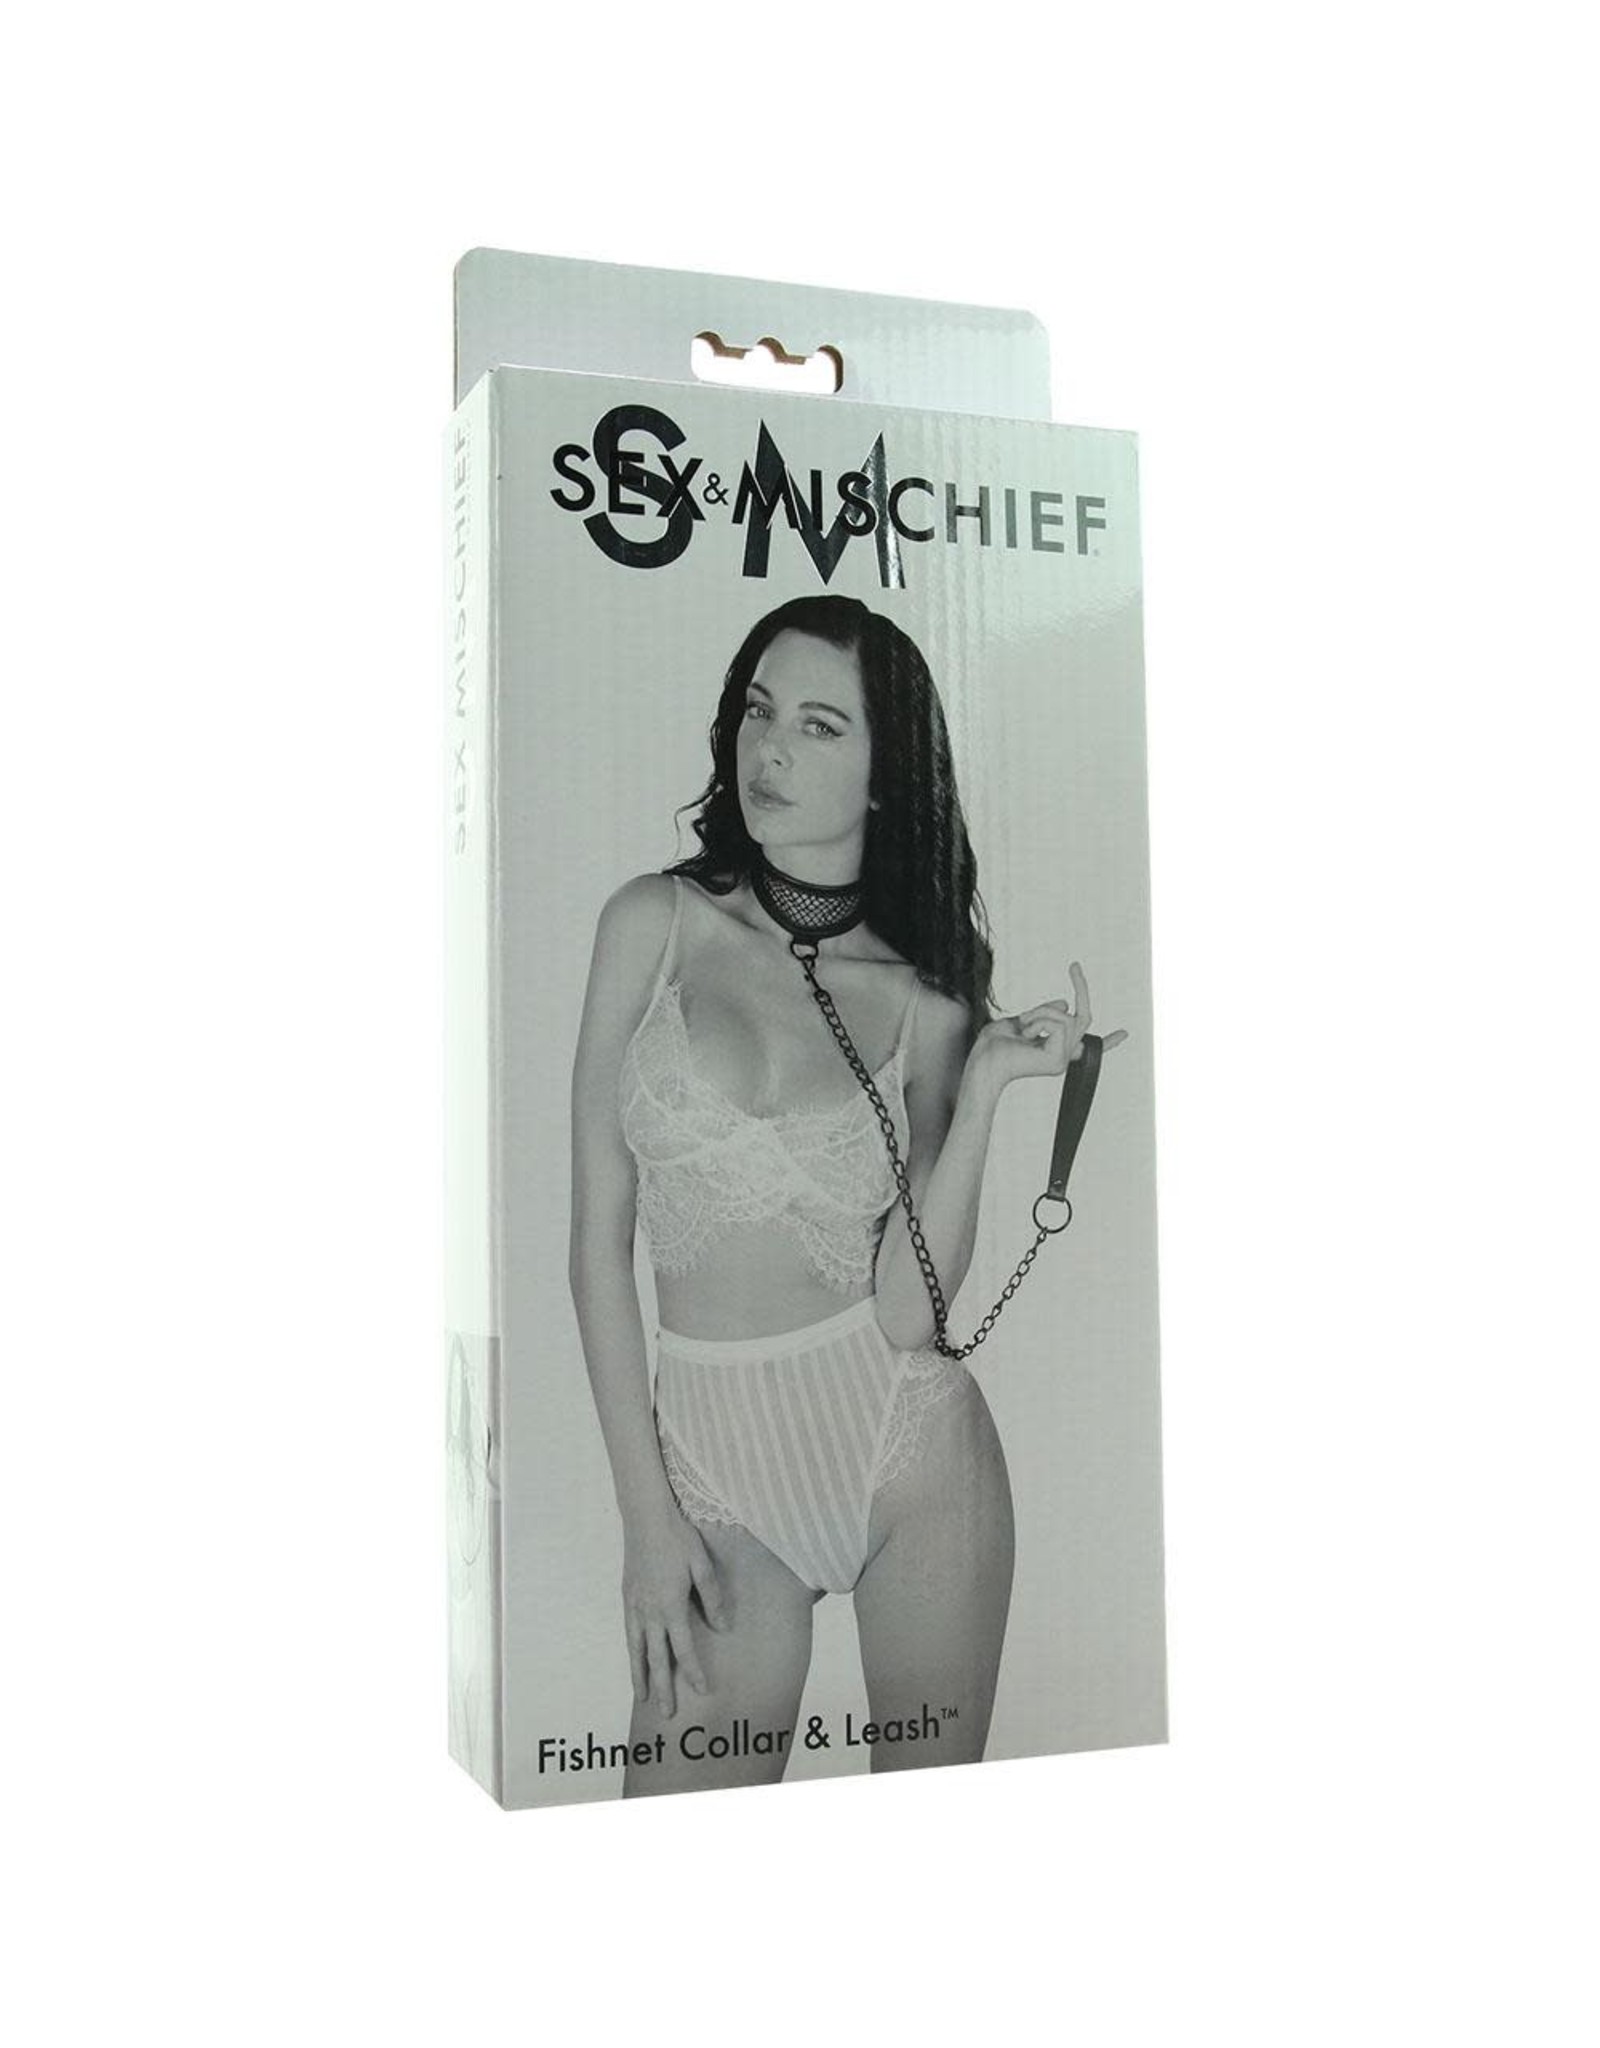 Sportsheets Sex & Mischief Fishnet Collar & Leash